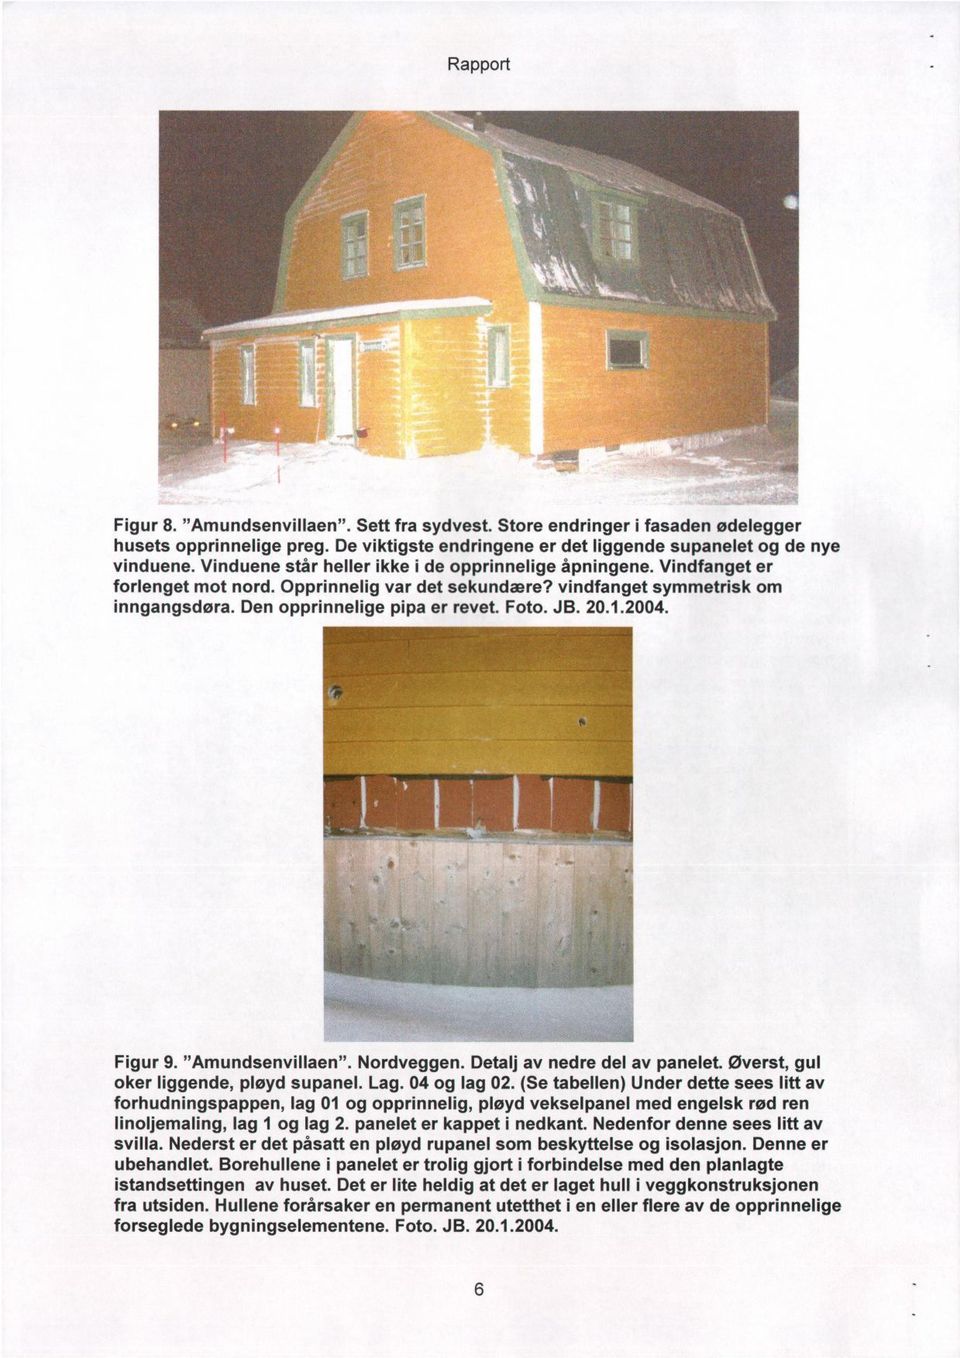 20.1.2004. Figur 9. "Amundsenvillaen". Nordveggen. Detalj av nedre del av panelet. Øverst, gul oker liggende, pløyd supanel. Lag. 04 og lag 02.